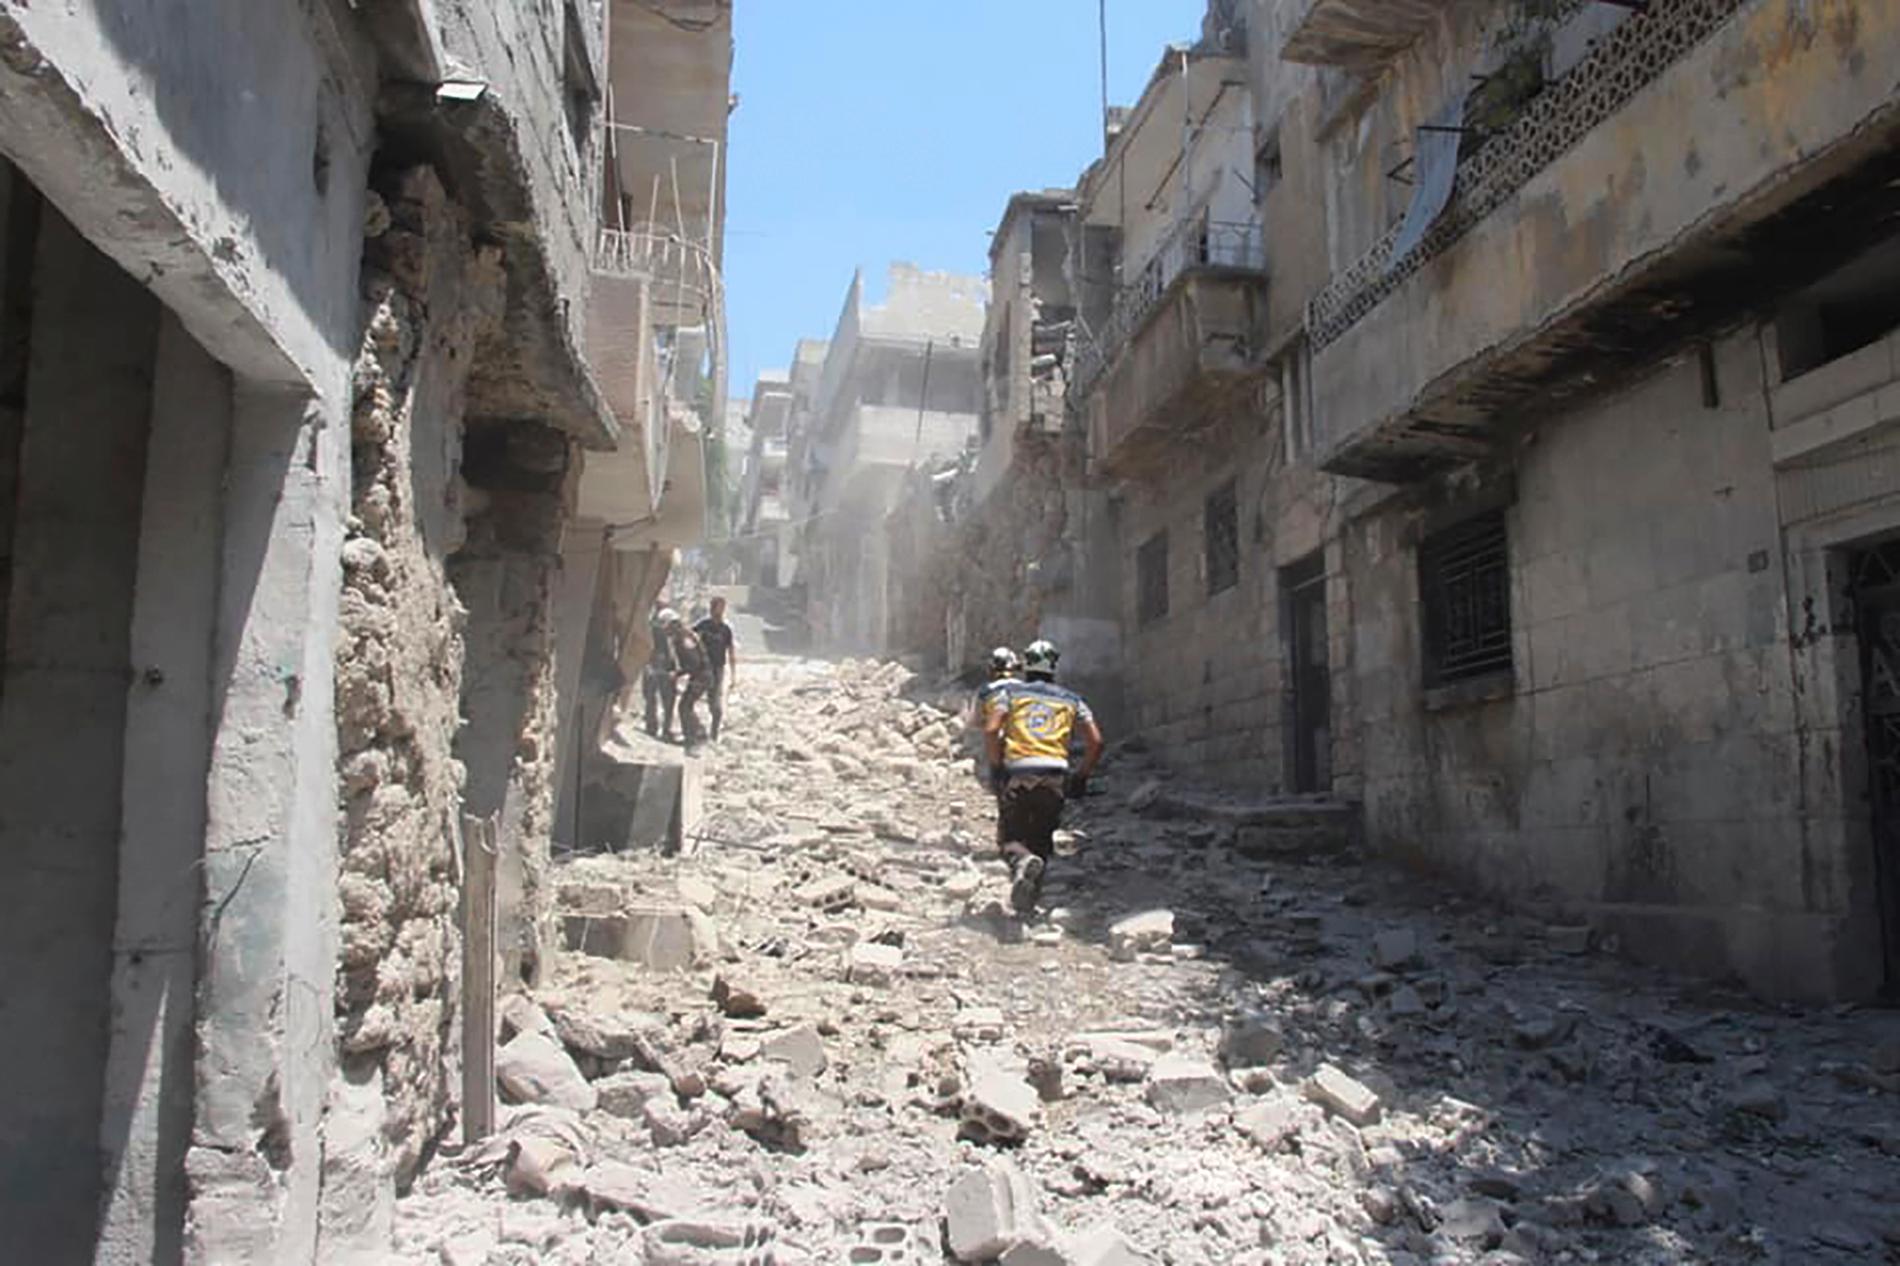 Hjälparbetare springer på en gata i Idlibprovinsen efter ett syriskt bombanfall. Bilden har tagits av den syriska hjälporganisationen Vita hjälmarna. Arkivbild